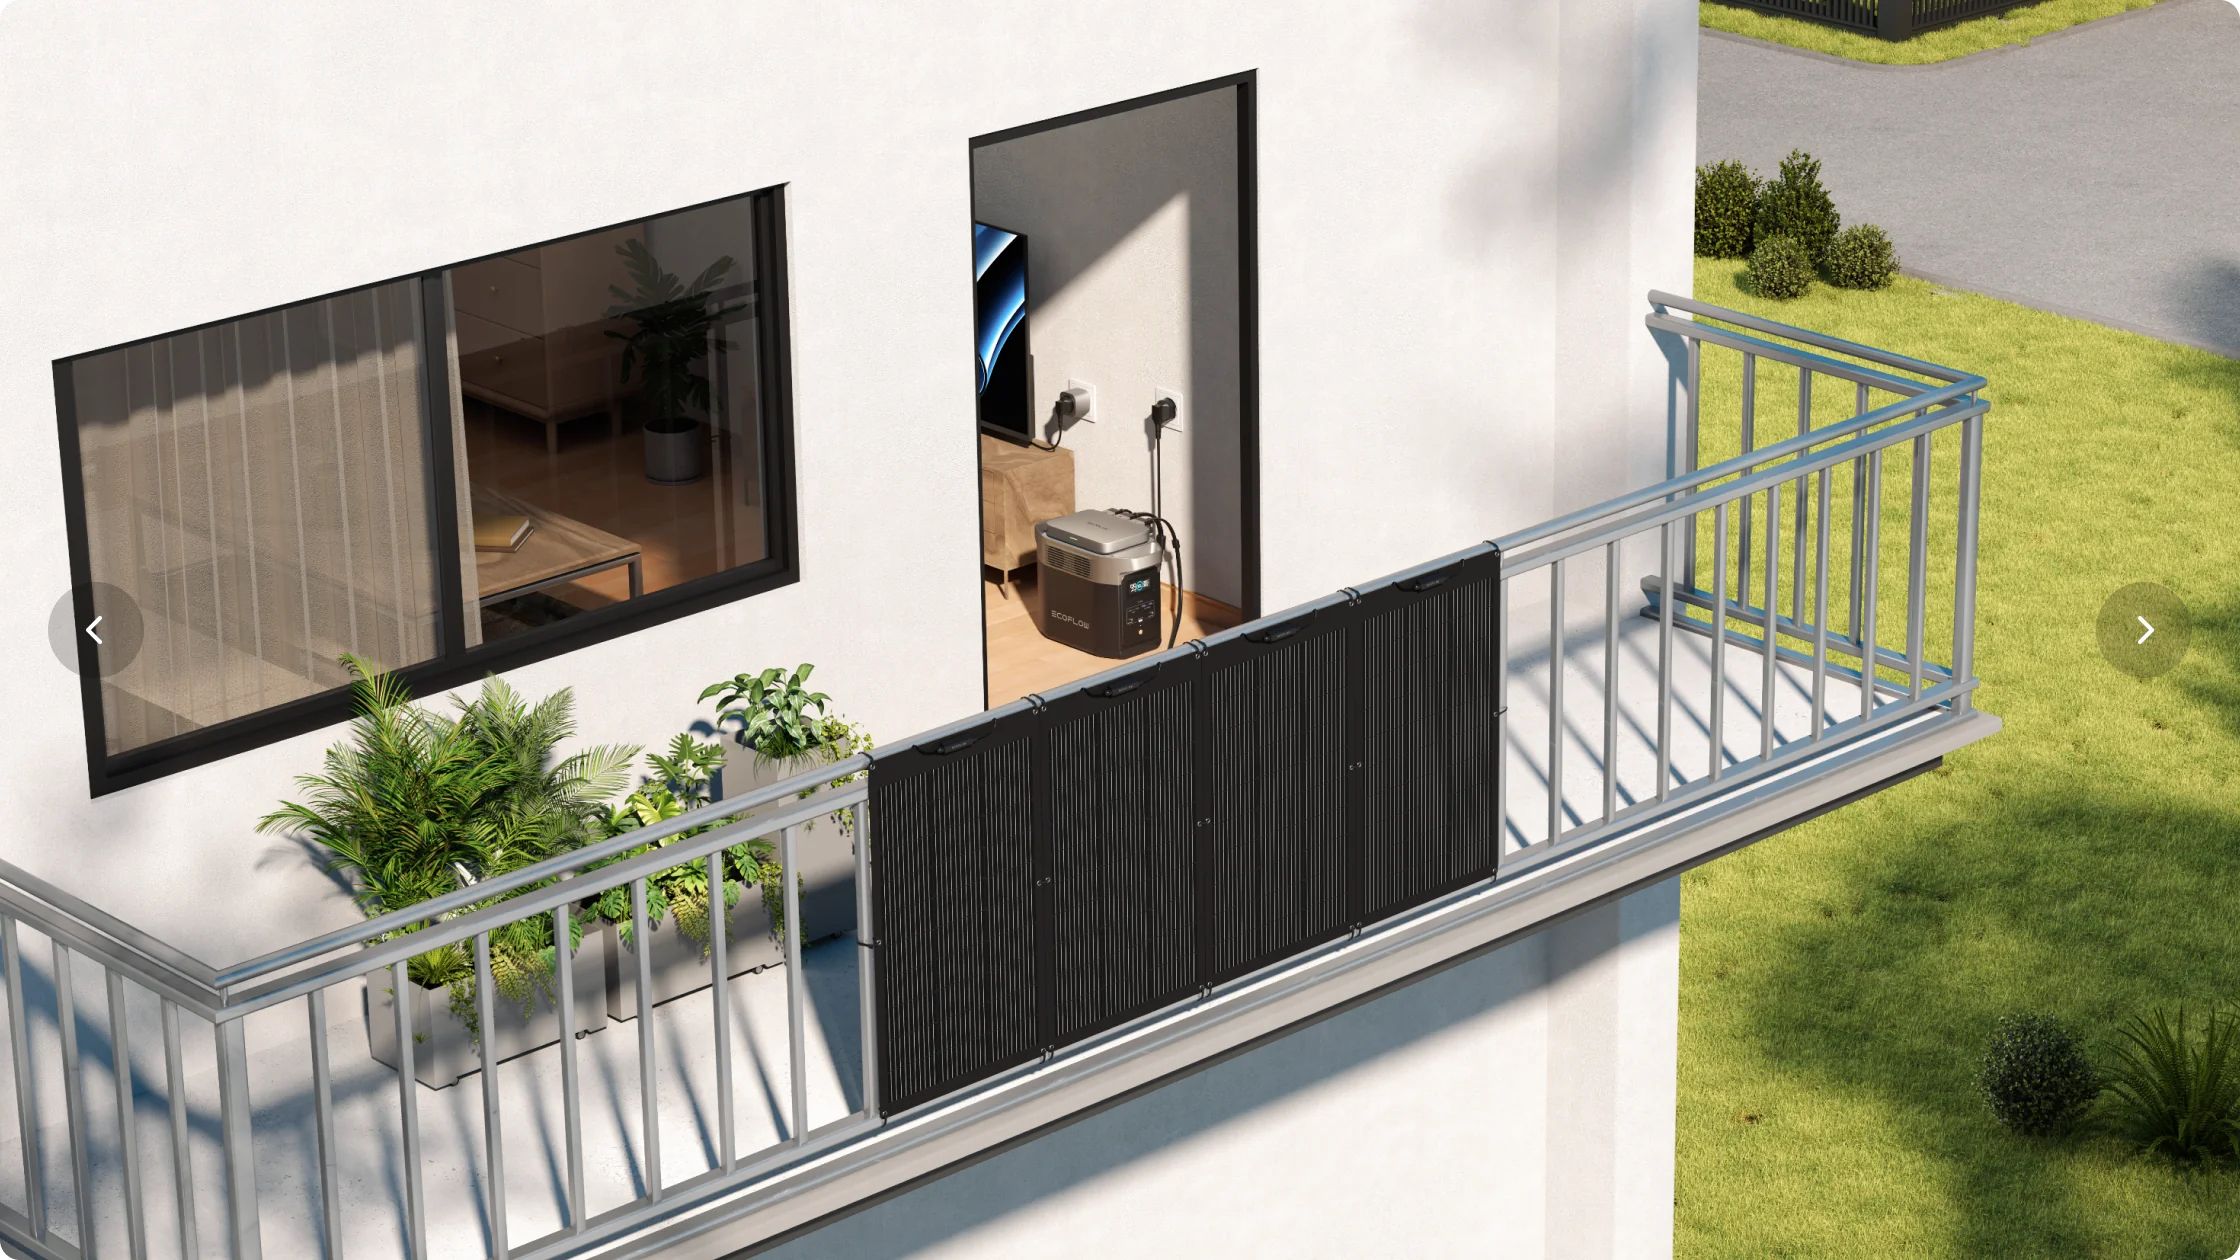 Kit solaire pour balcon PowerStream